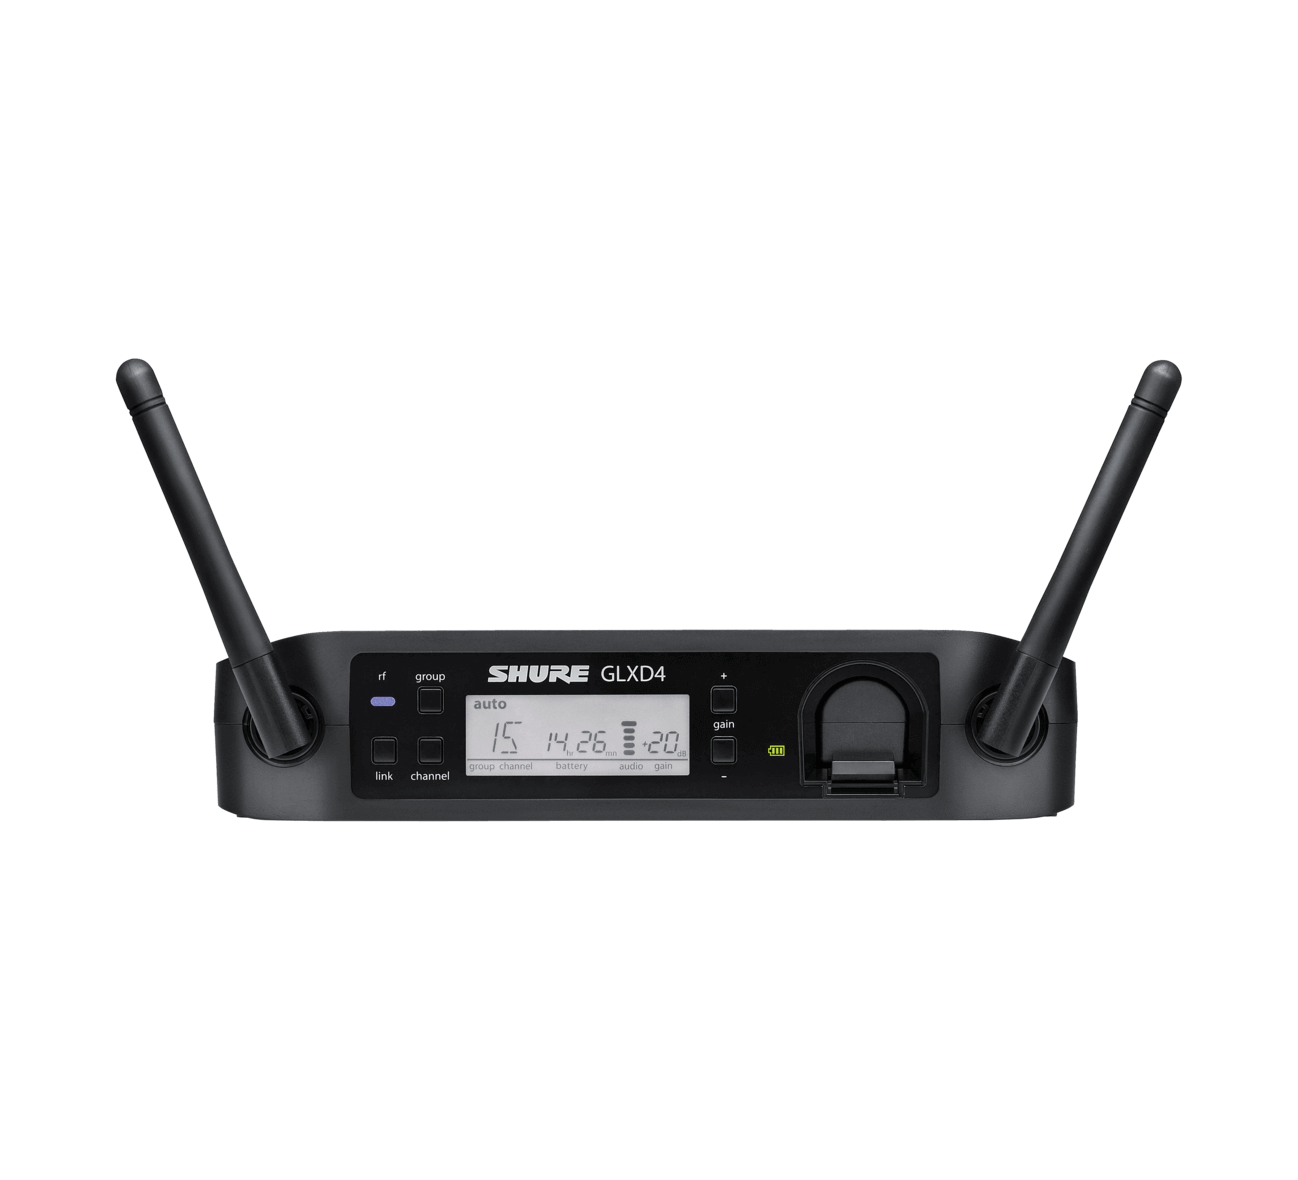 Shure general Shure glxd24/sm58 sistema inalámbrico digital para voz, con micrófono vocal sm58